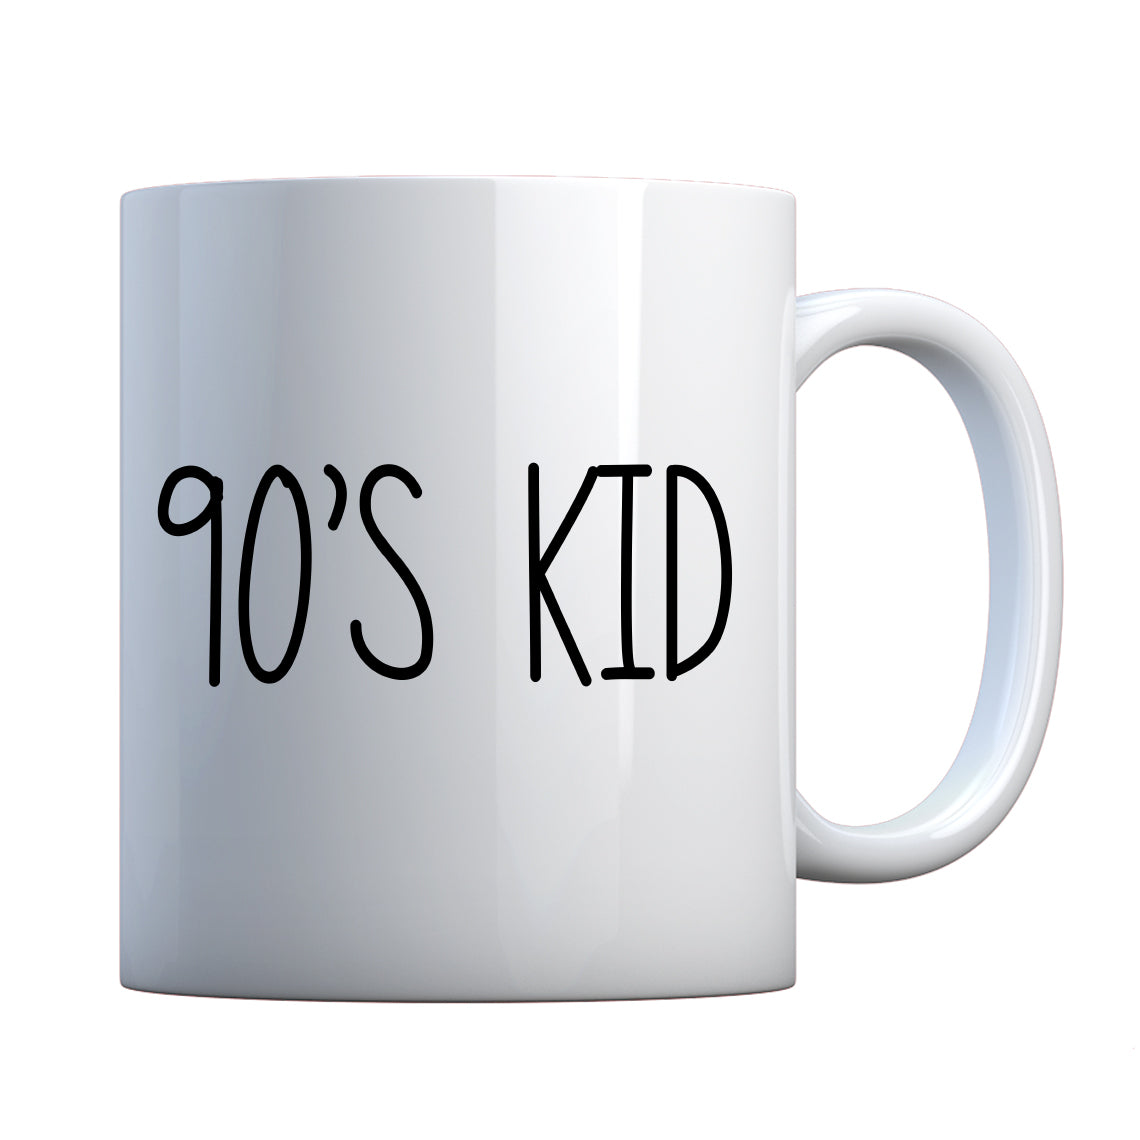 Mug 90s Kid Ceramic Gift Mug